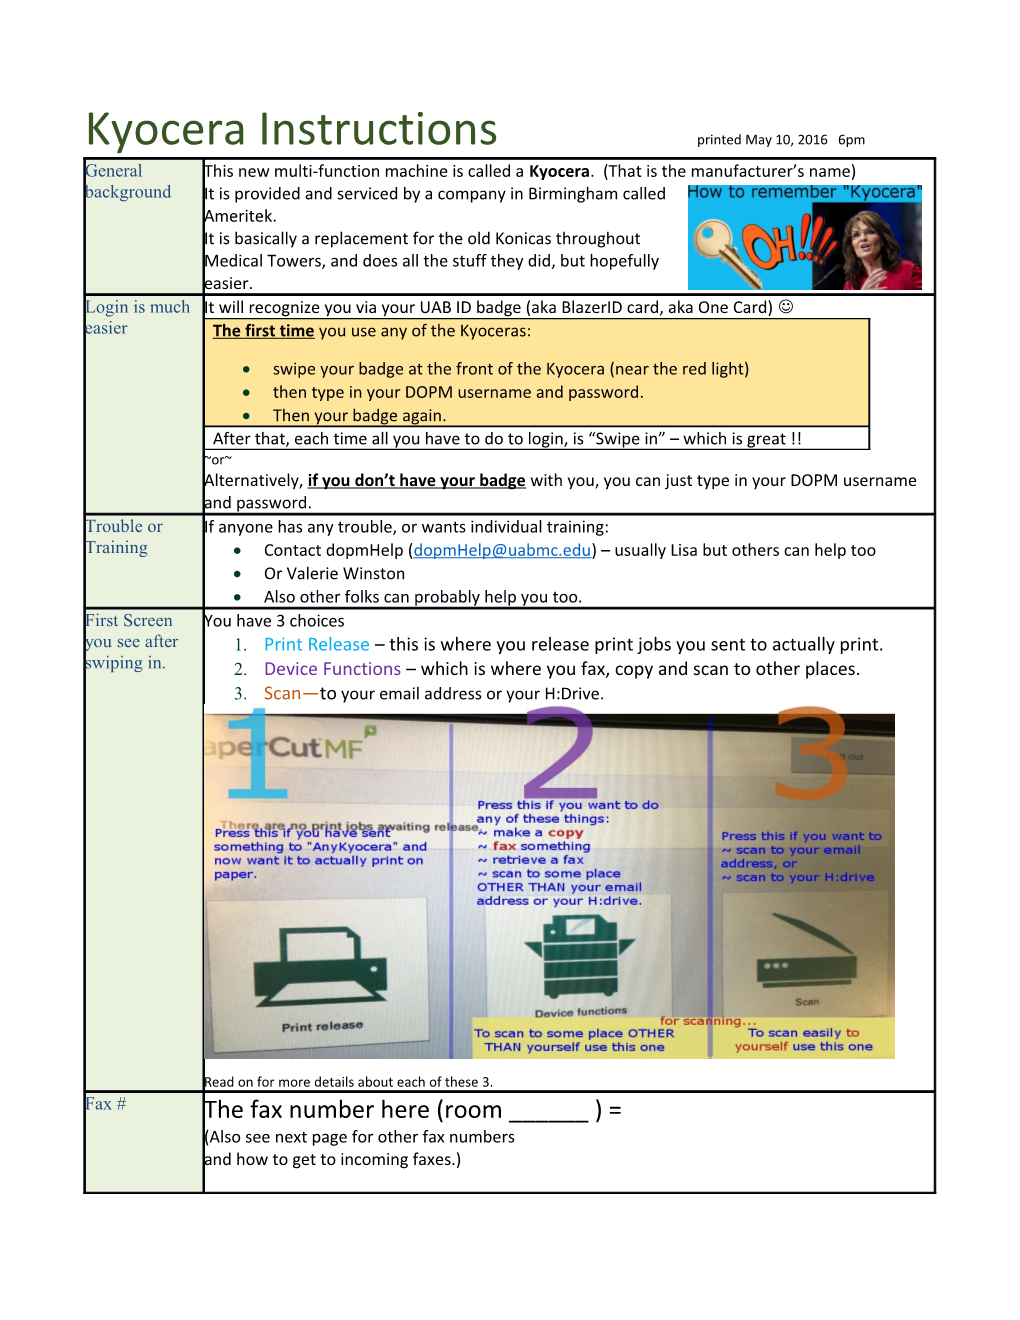 Kyocera Instructions Printed May 10, 2016 6Pm